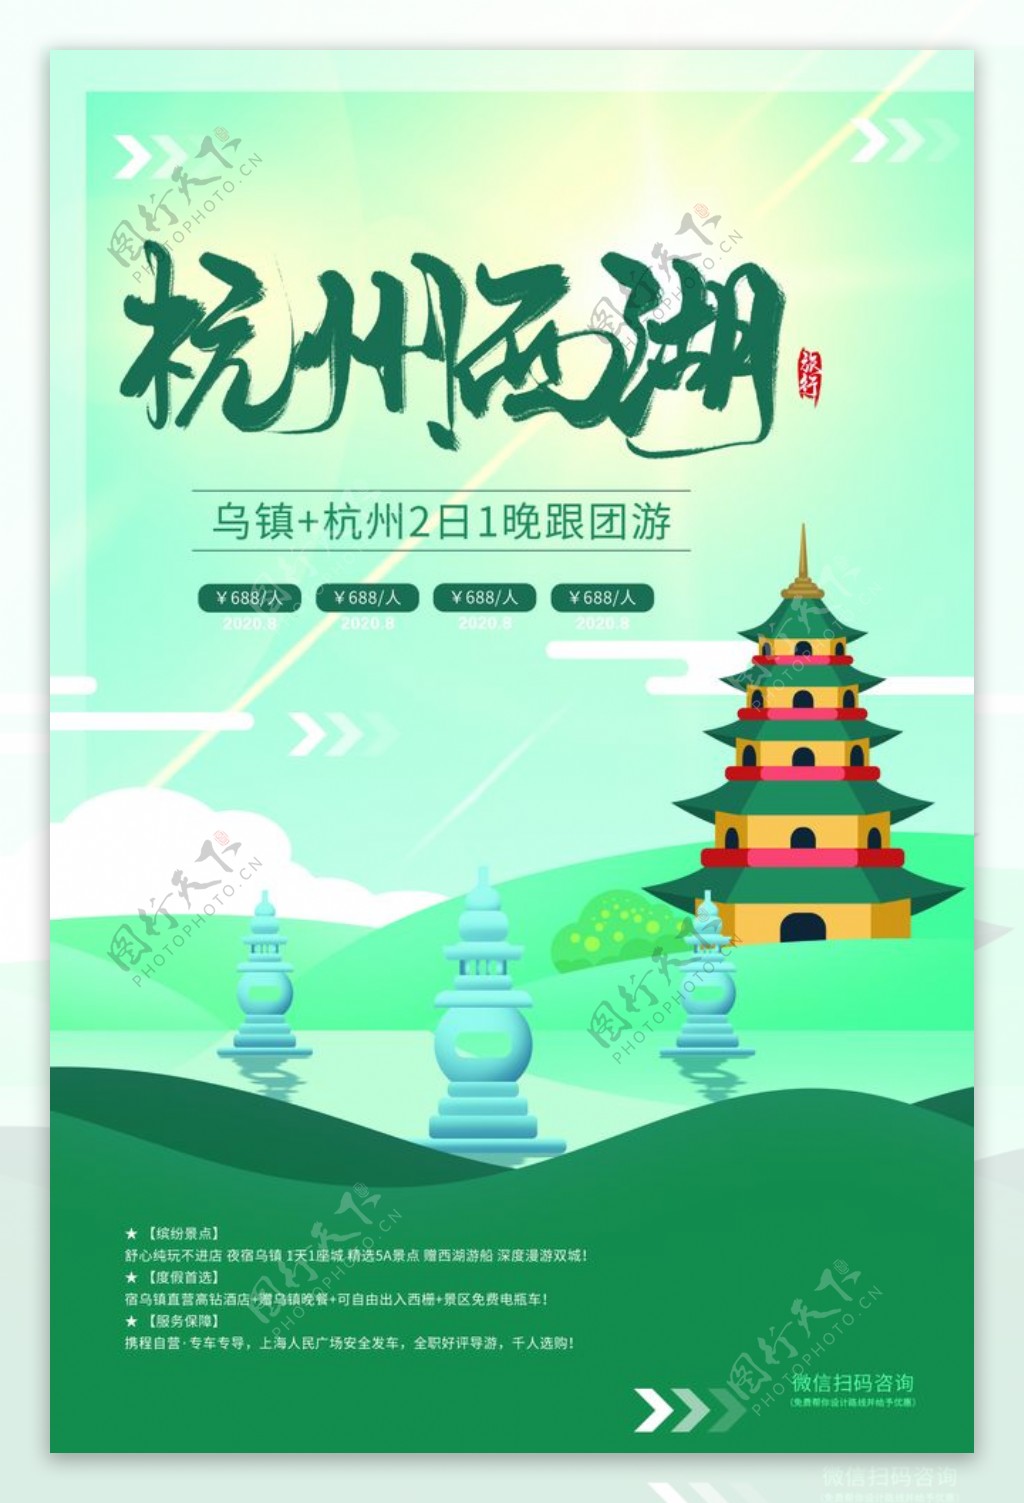 杭州西湖旅游活动促销海报素材